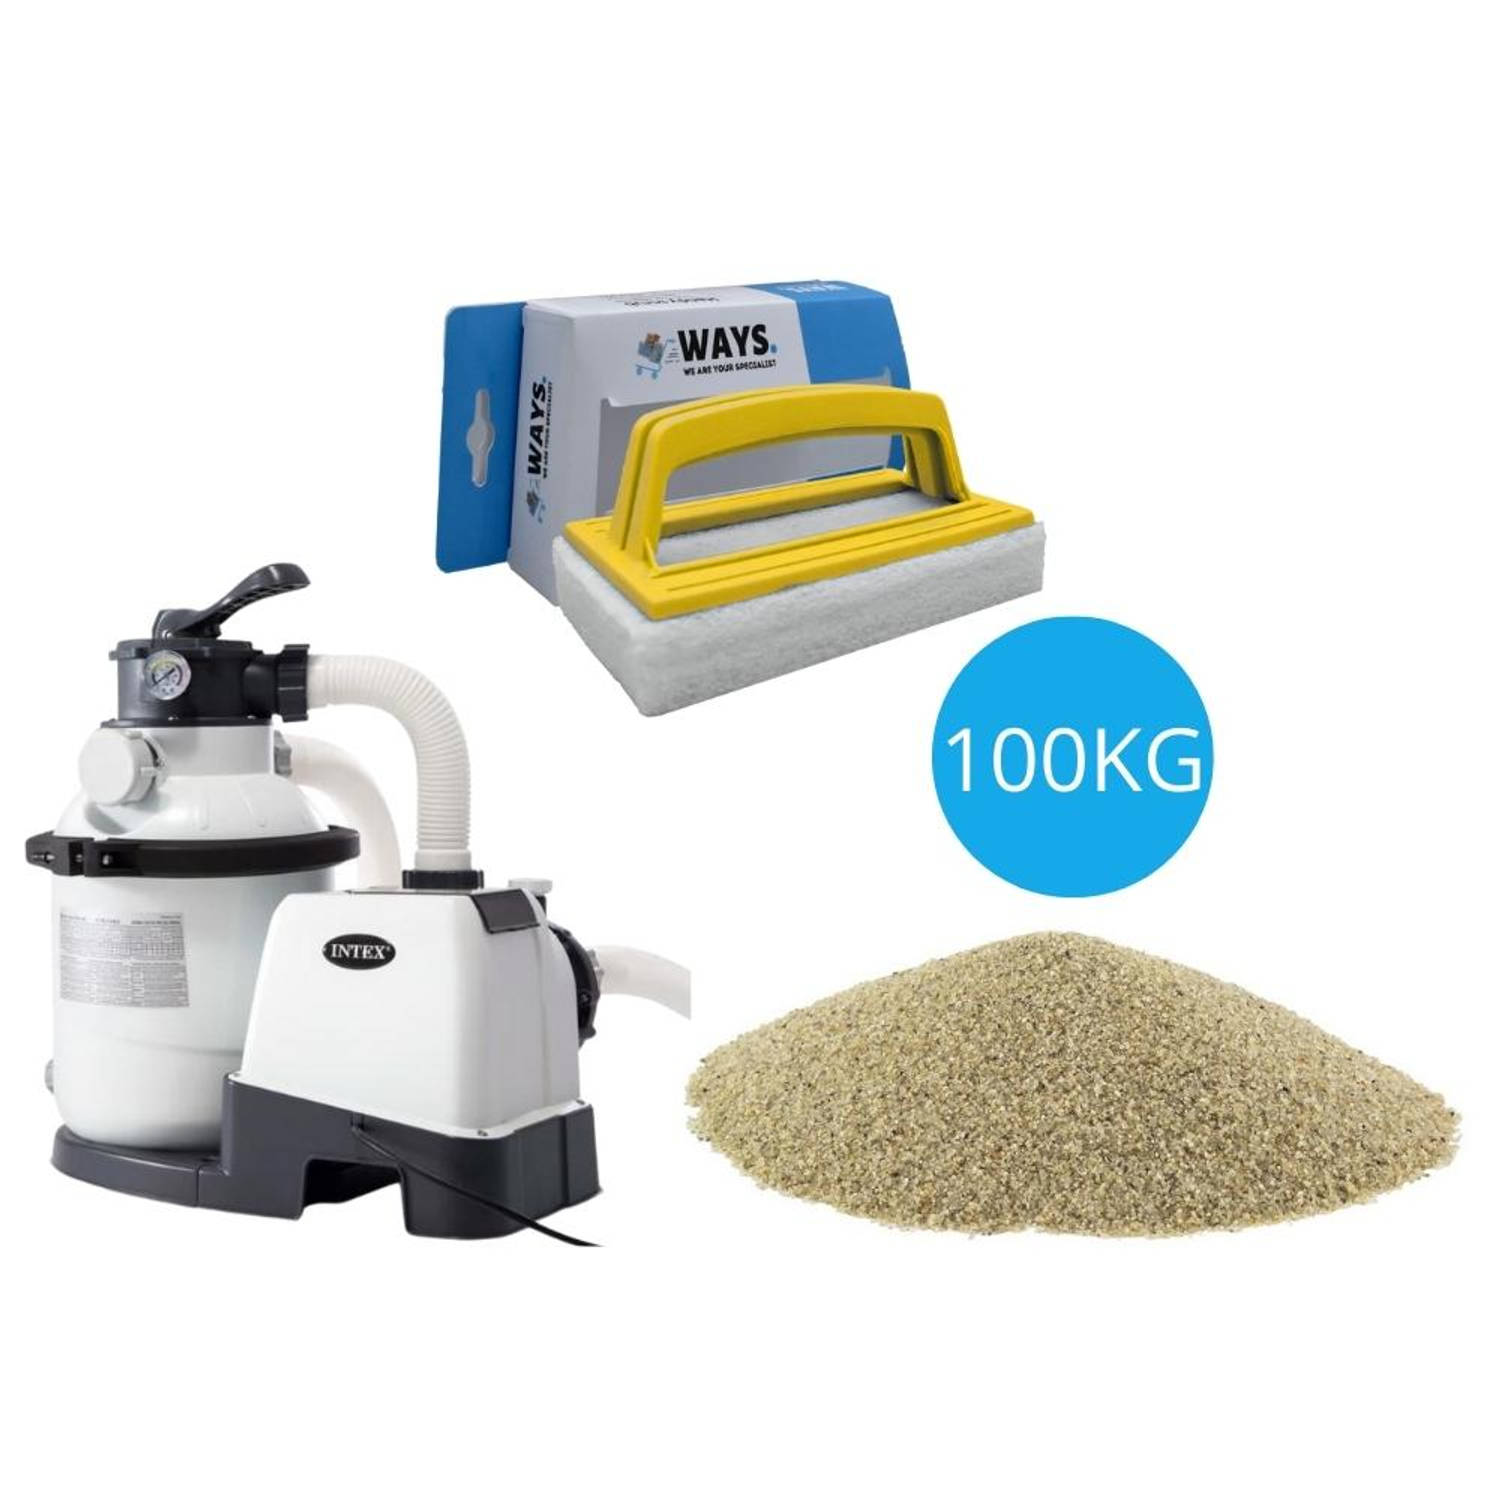 Intex - Zandfilterpomp 5700 L/u & Filterzand 100 kg & WAYS Scrubborstel